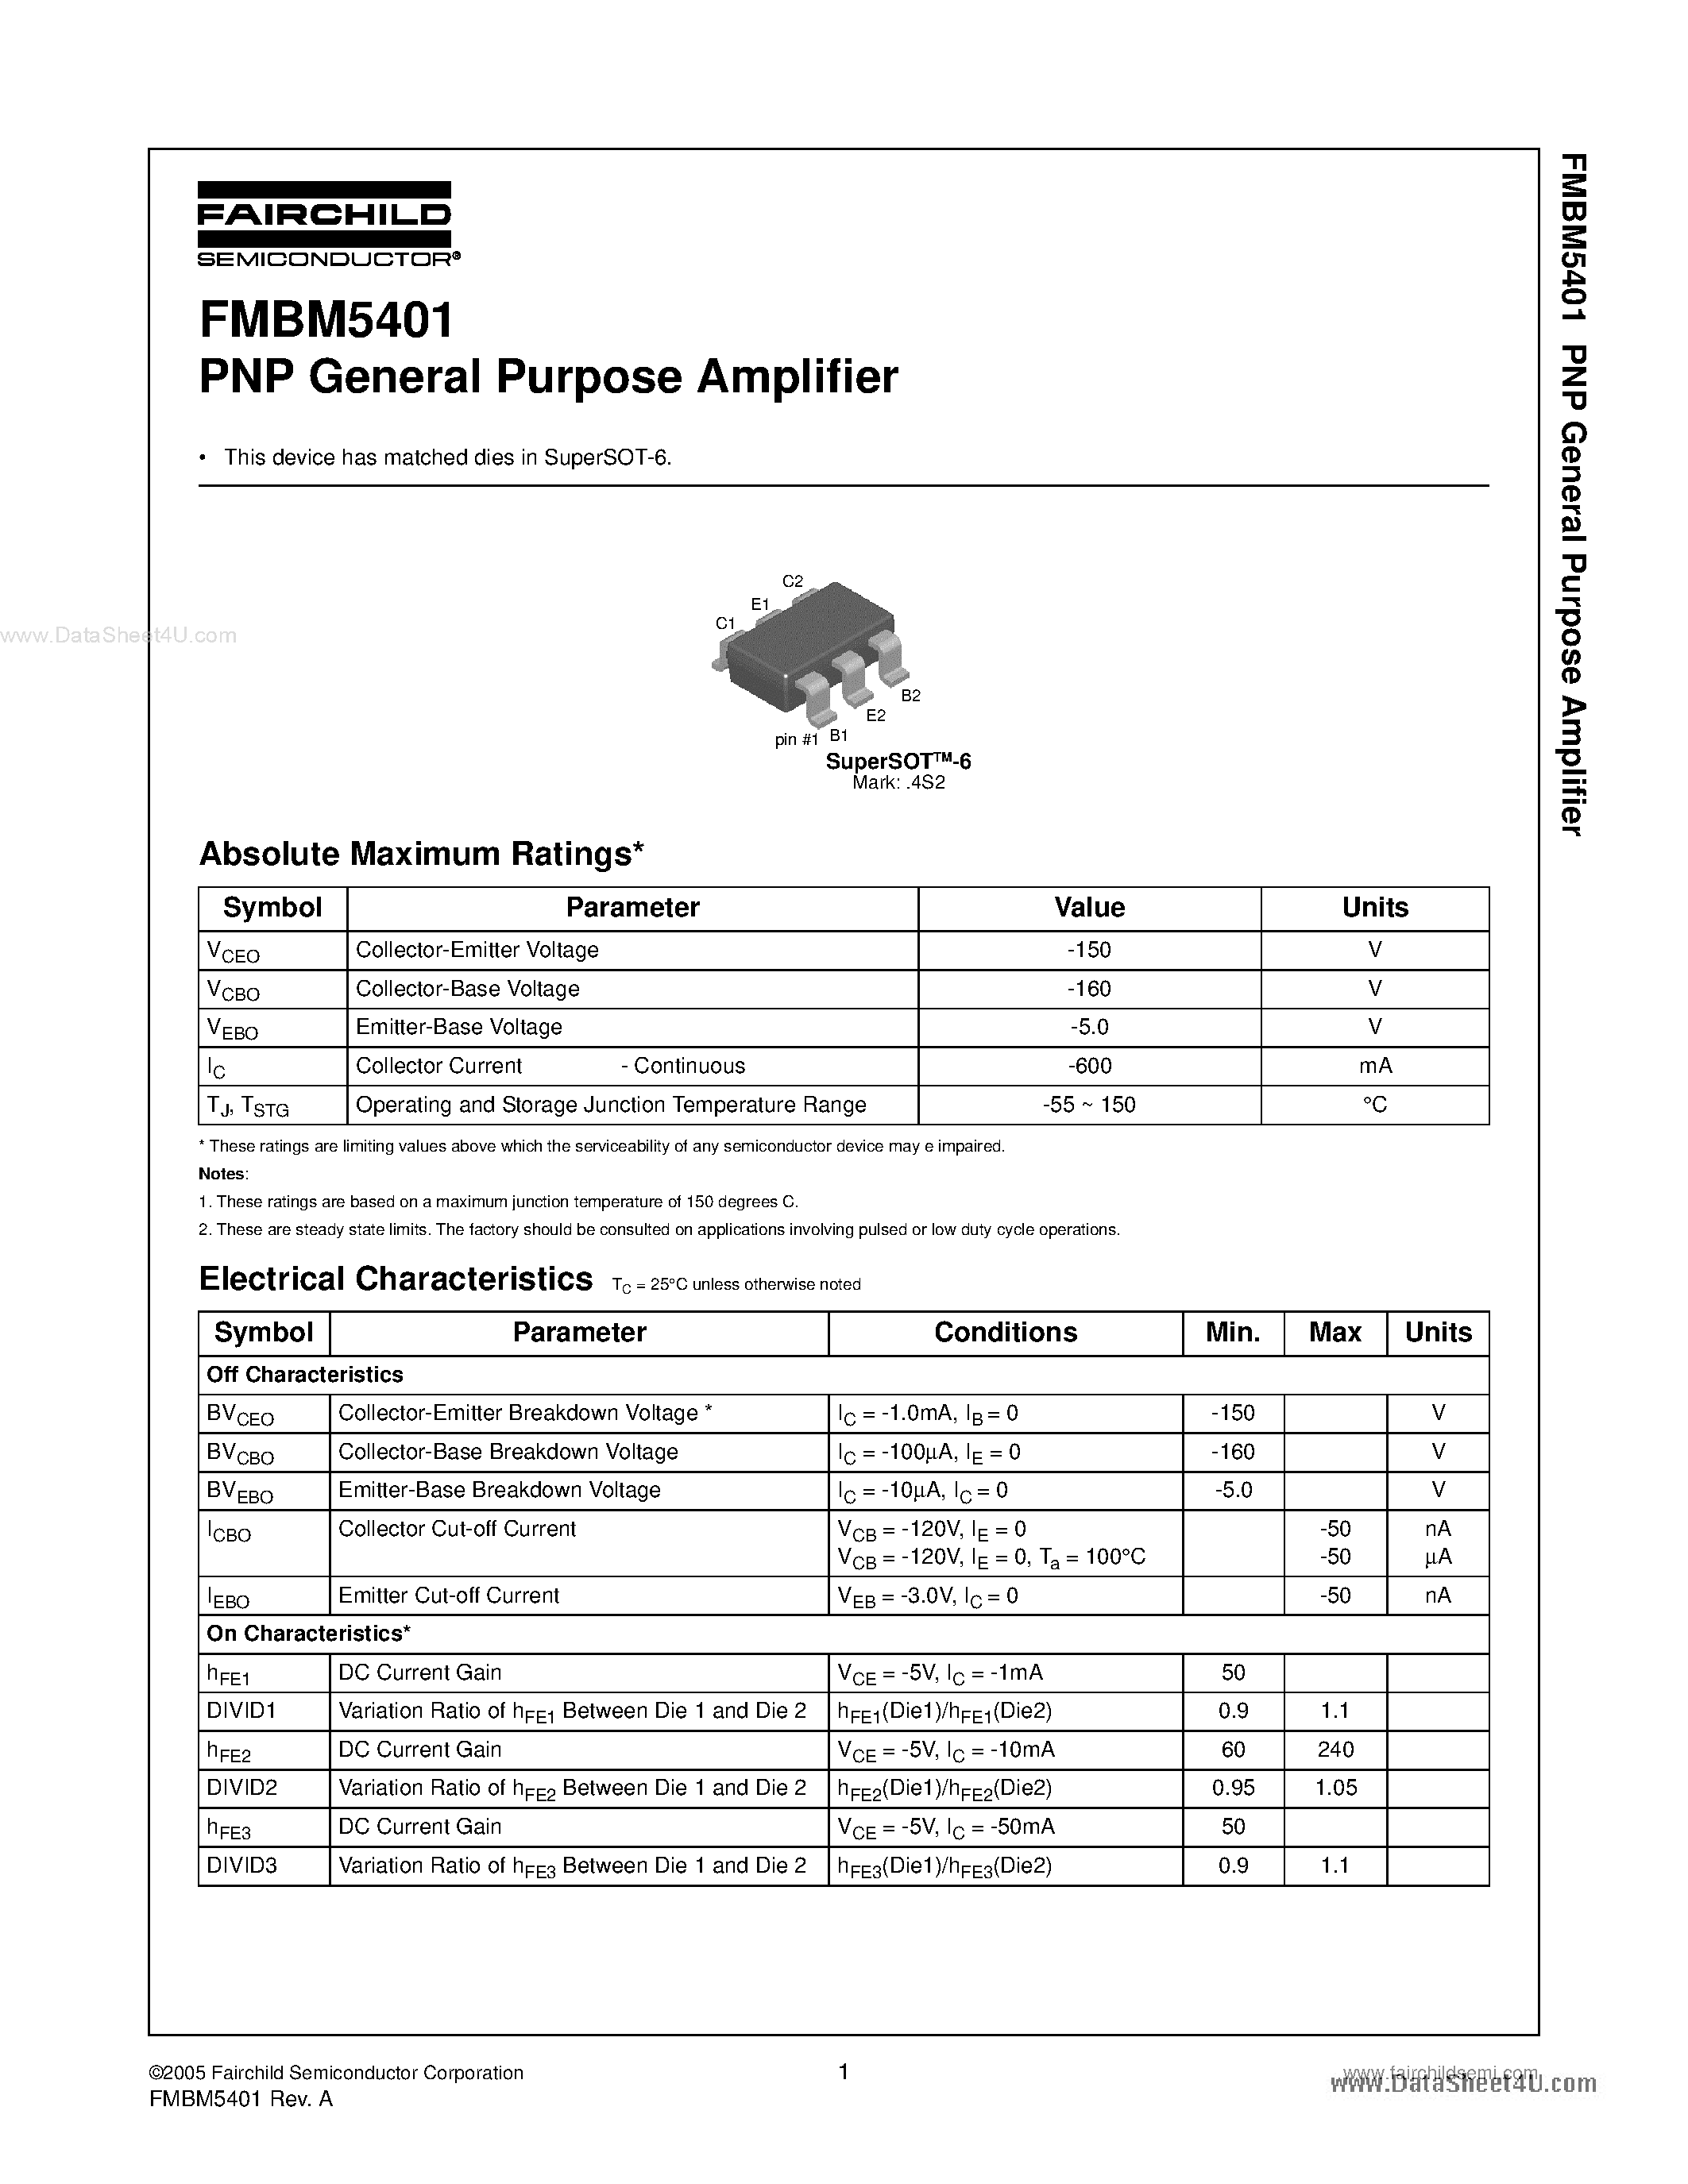 Datasheet FMBM5401 - PNP General Purpose Amplifier page 1